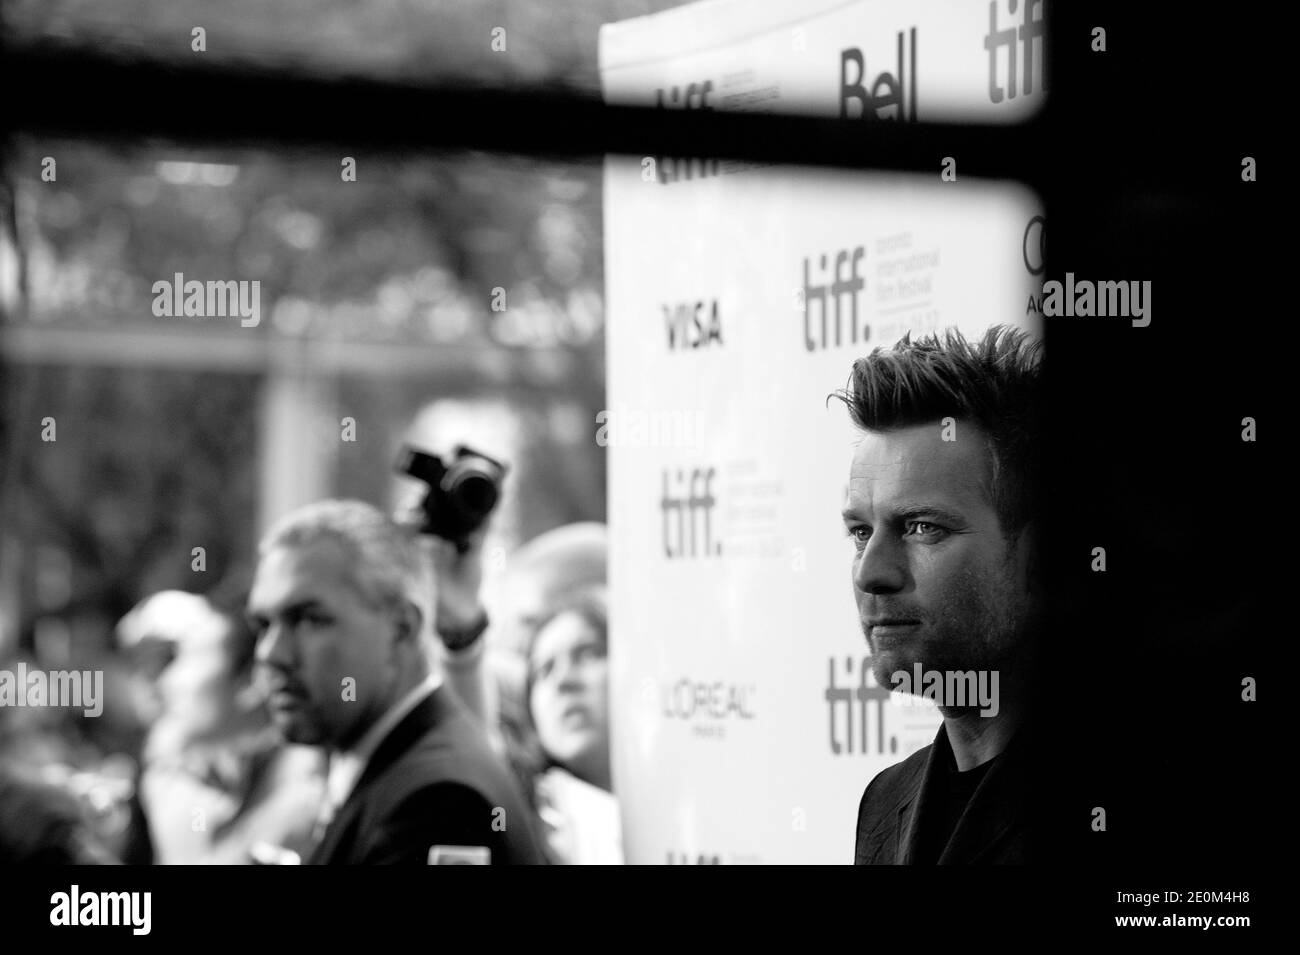 Ewan McGregor partecipa alla proiezione 'The Impossible' durante il 37th Toronto International Film Festival TIFF, a Toronto, Canada, il 9 settembre 2012. Foto di Lionel Hahn/ABACAPRESS.COM Foto Stock